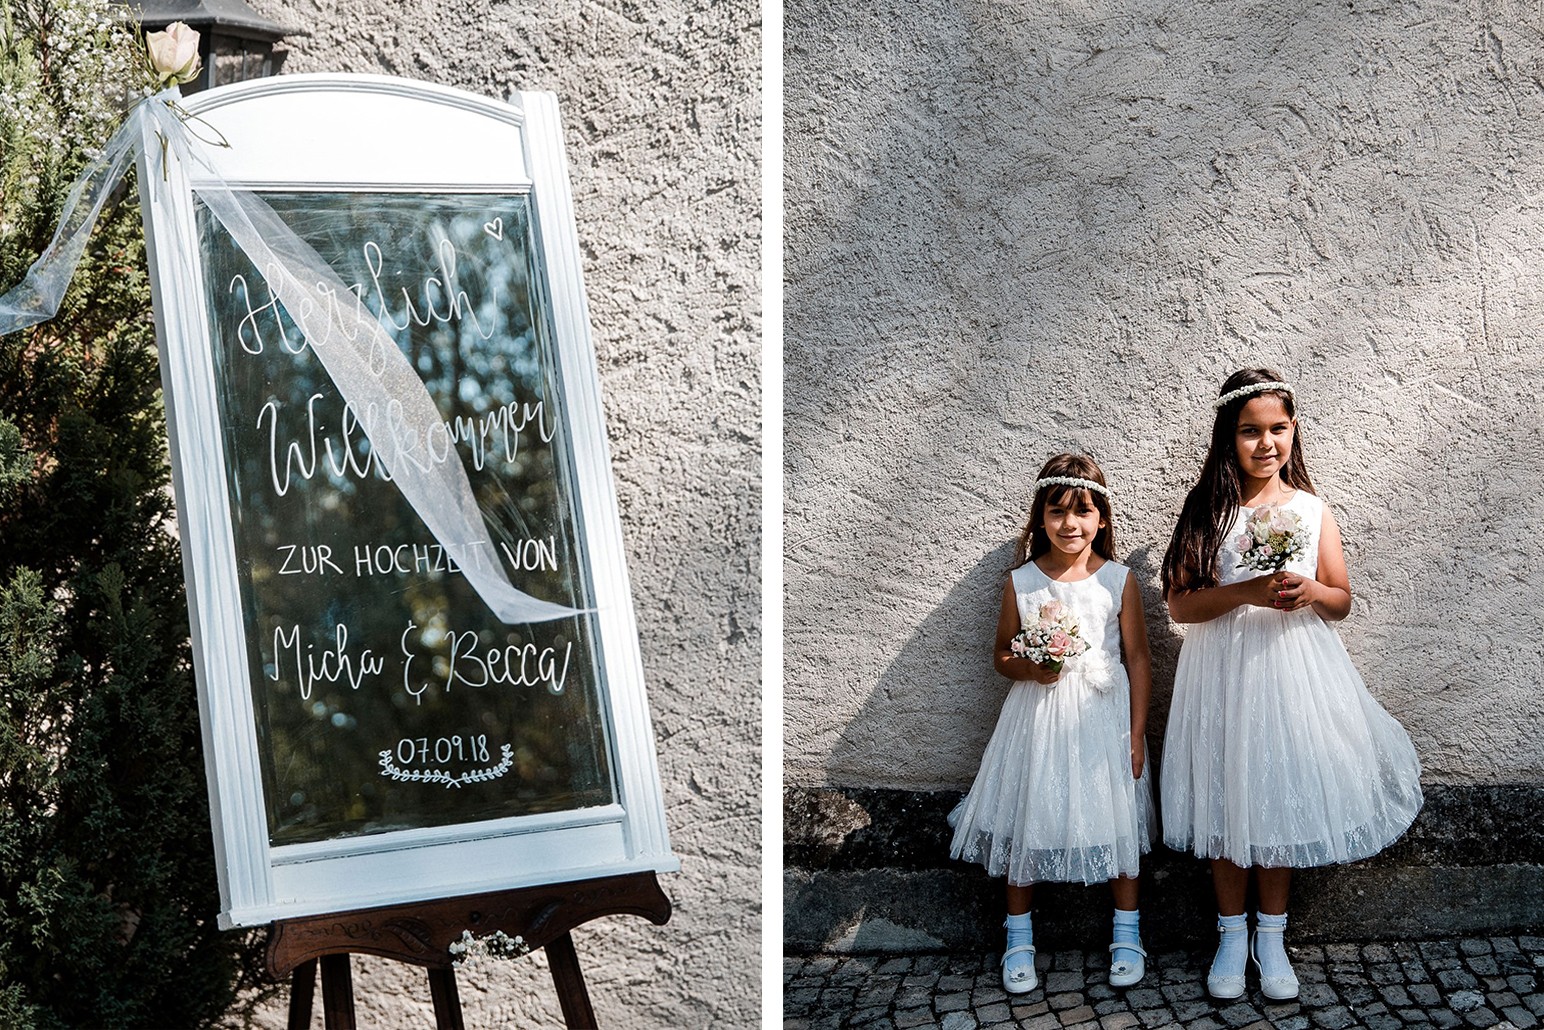 Aida + Tim | Hochzeitsfotografen am Bodensee Hochzeit - Insel Mainau, Konstanz  - Hochzeitsfotografie von Aida und Tim